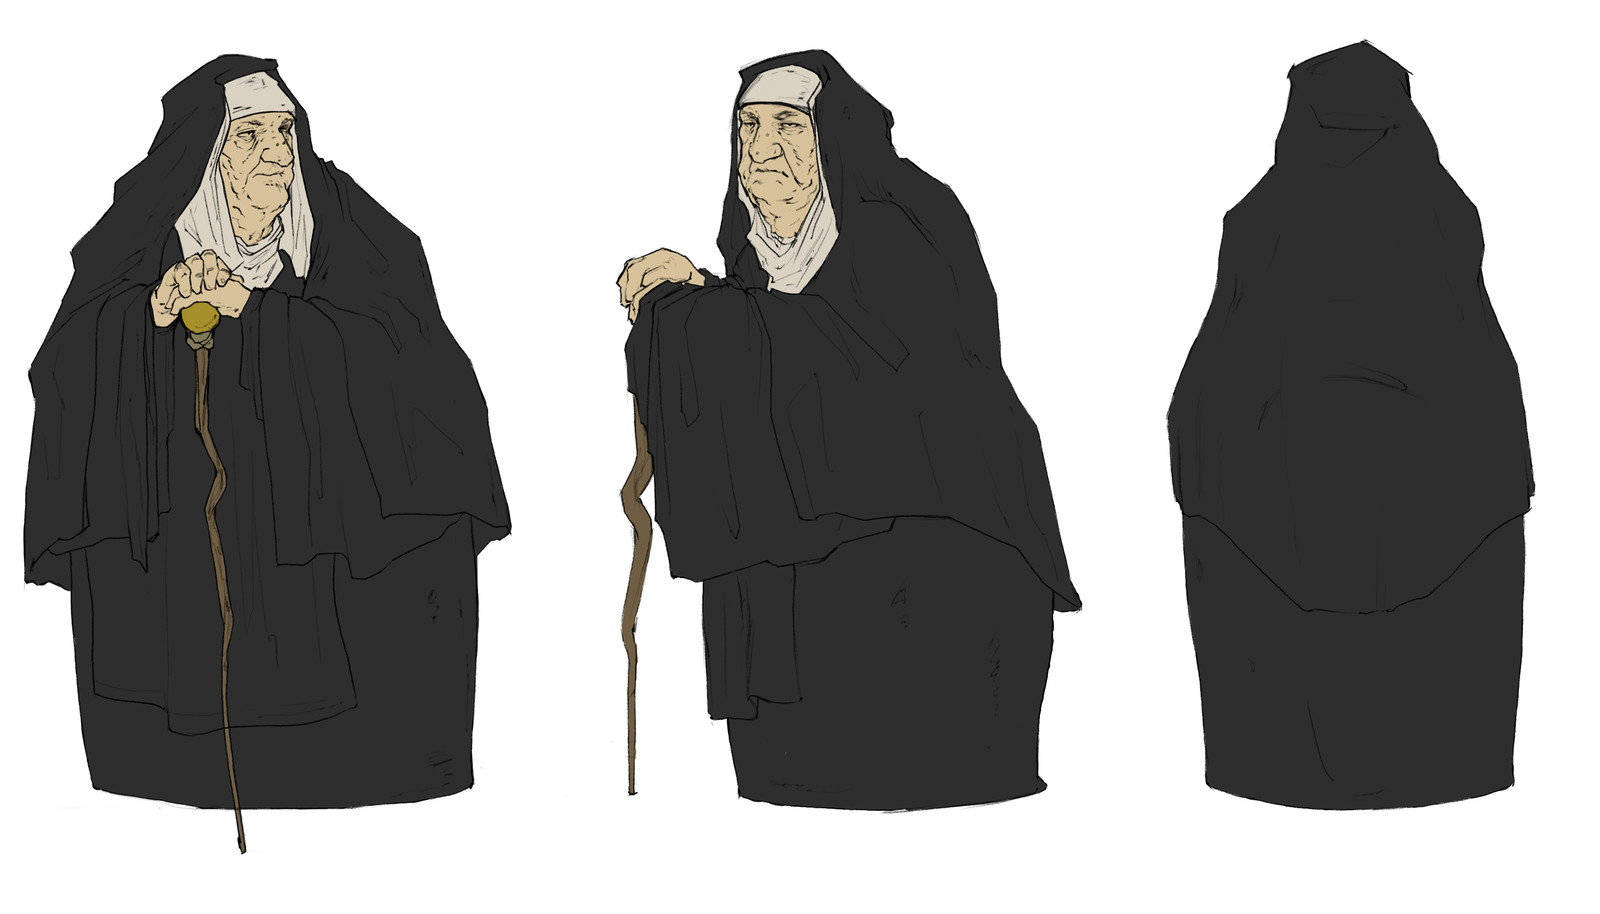 Killer nun